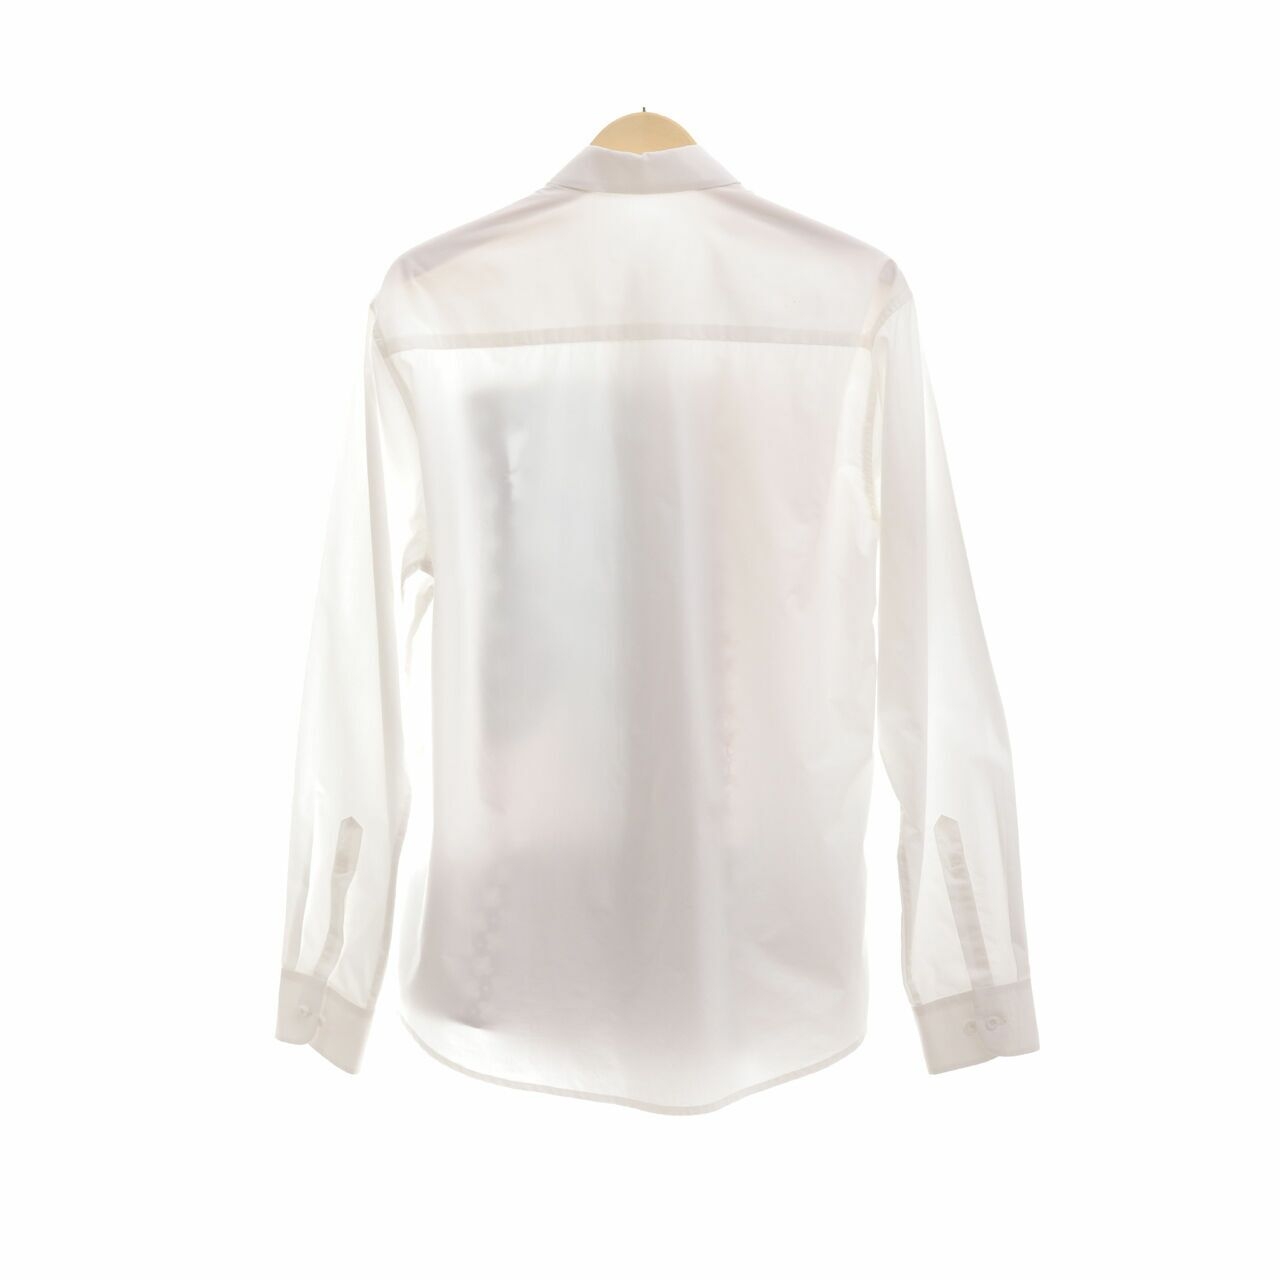 Studio 133 Biyan for Galaries Lafayete White Multi Pattern Shirt